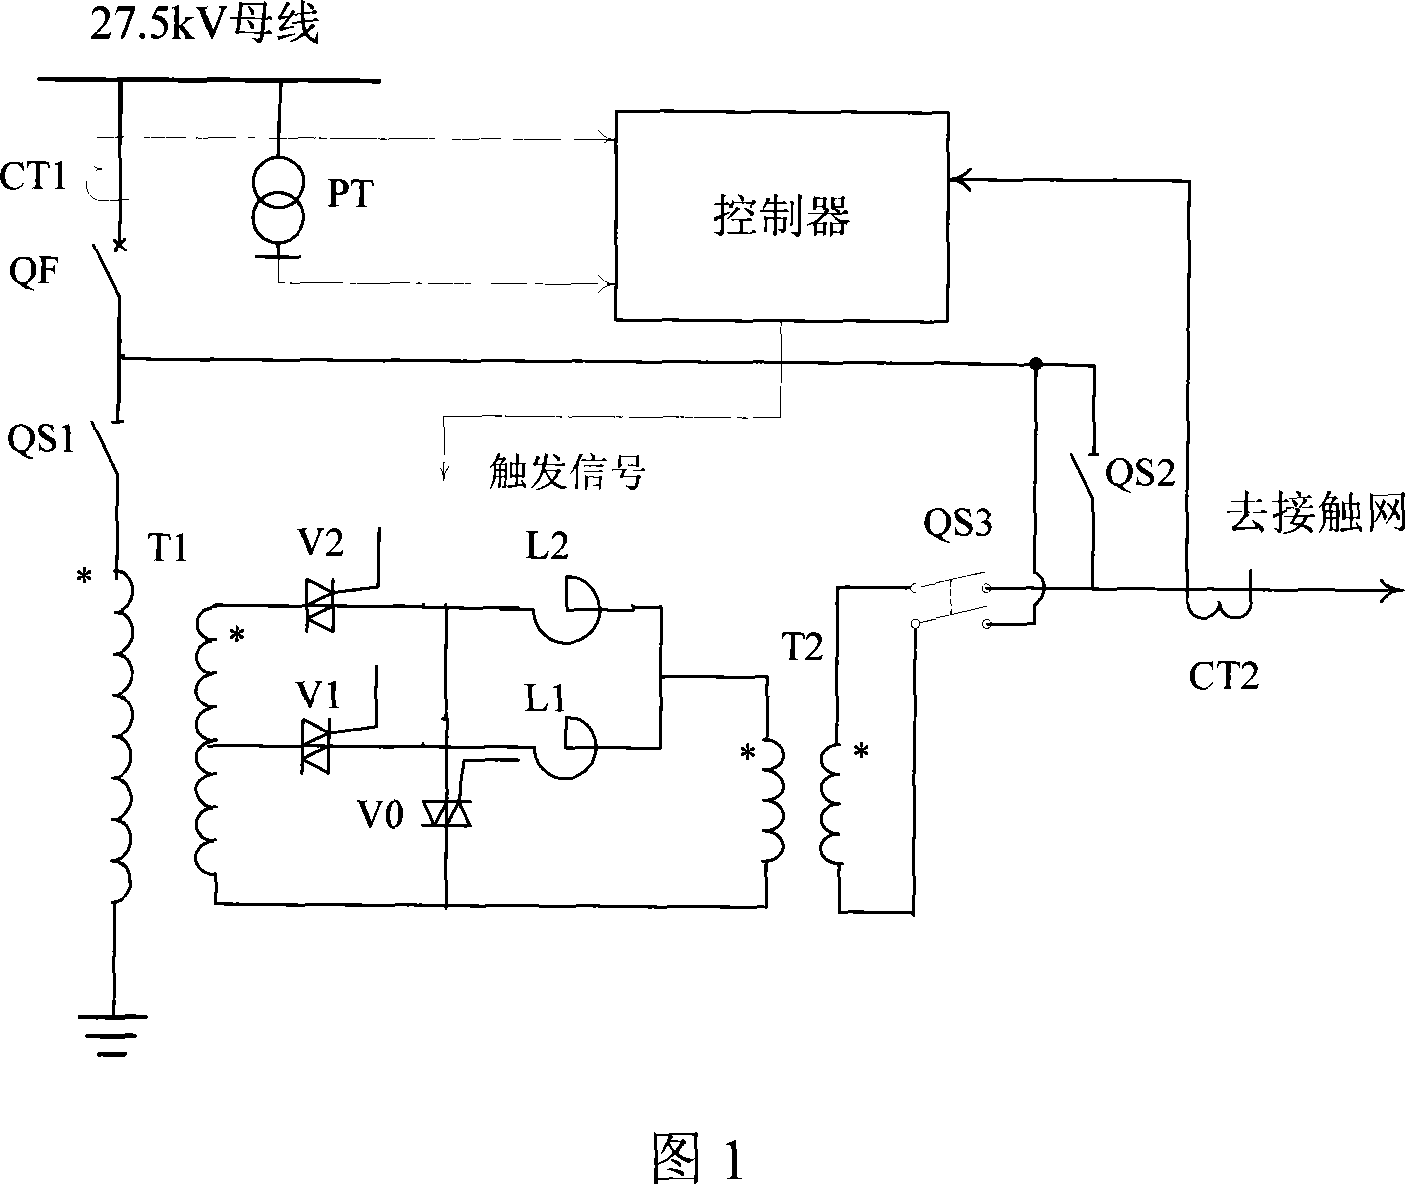 Gate circuit transistor controlling series transformer type electrified railway dragging net pressure-regulating-apparatus